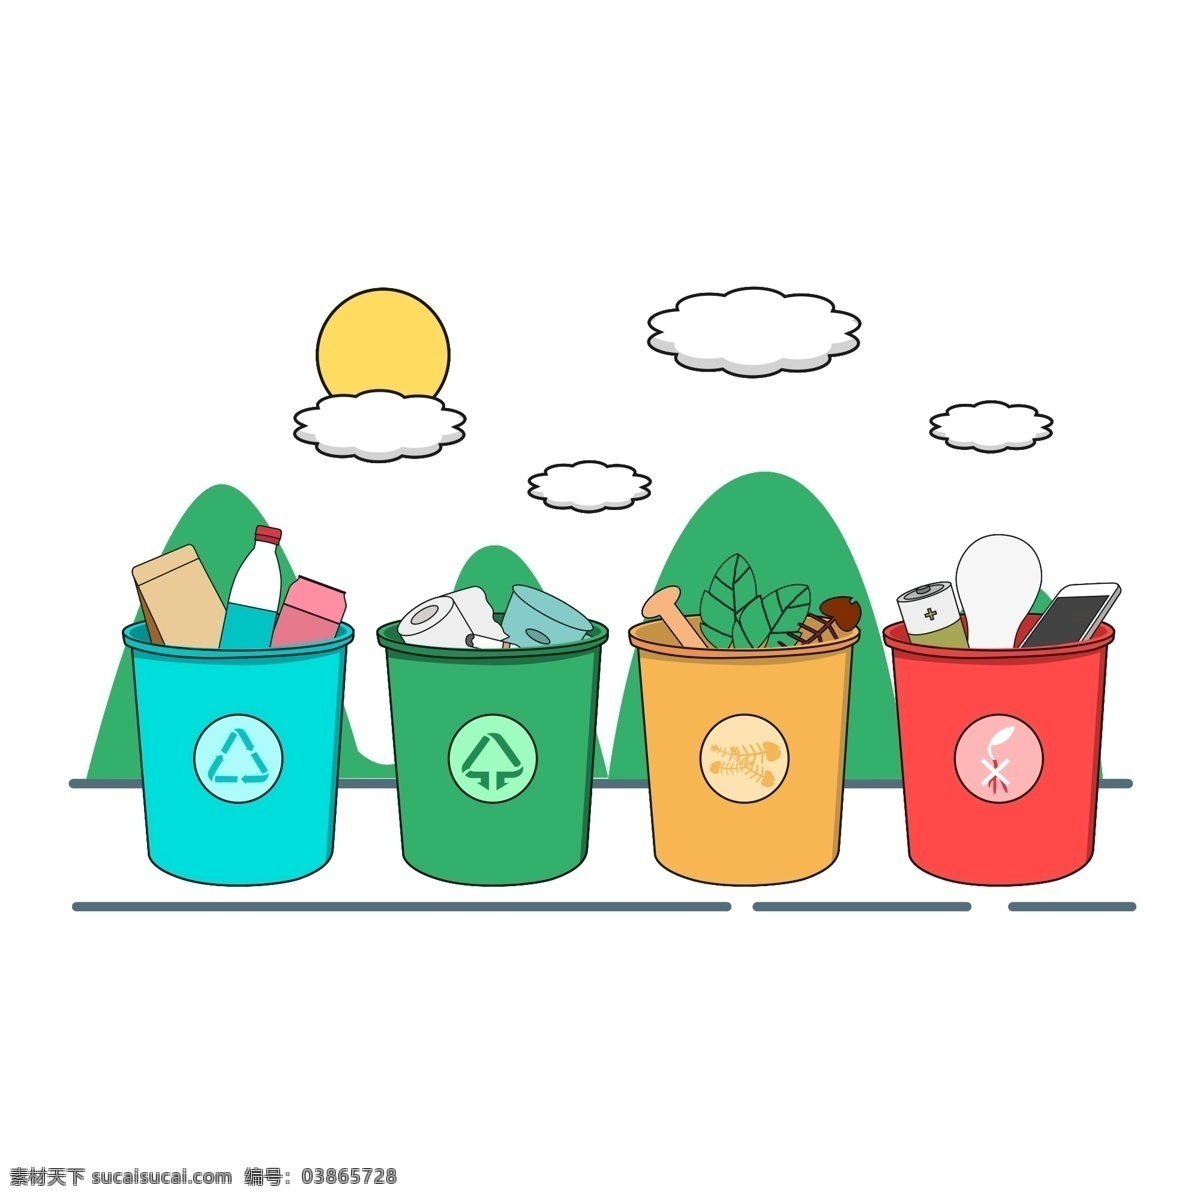 扁平化 环卫 工人 节 垃圾 分类 元素 图标 垃圾分类 可回收垃圾 其他垃圾 厨余垃圾 有害垃圾 垃圾桶 装饰 装饰图案